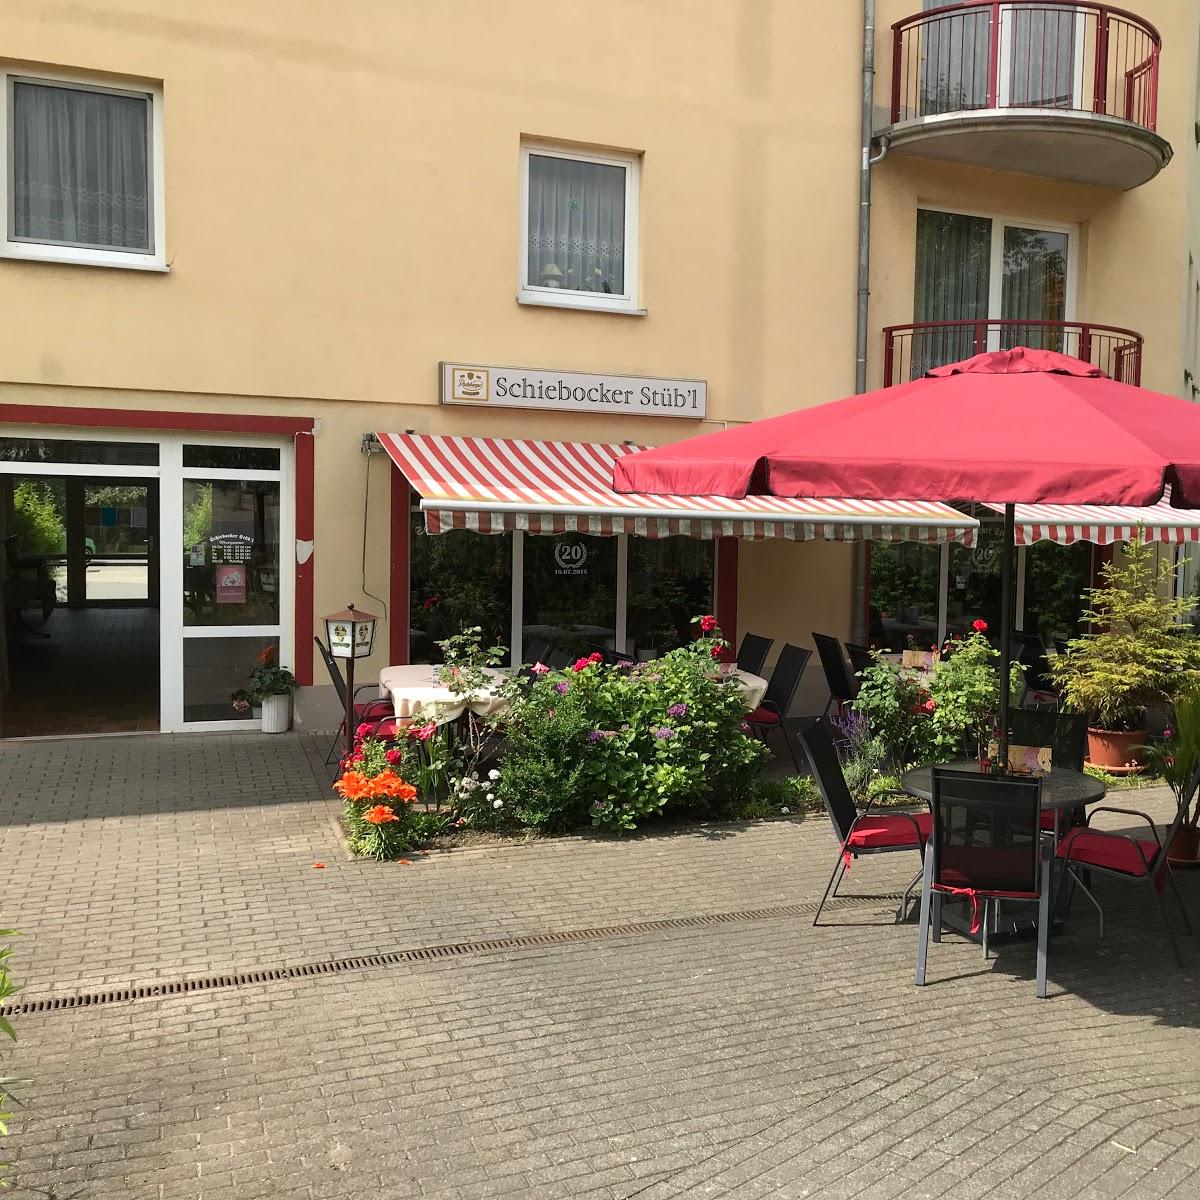 Restaurant "Schiebocker Stübl" in Bischofswerda